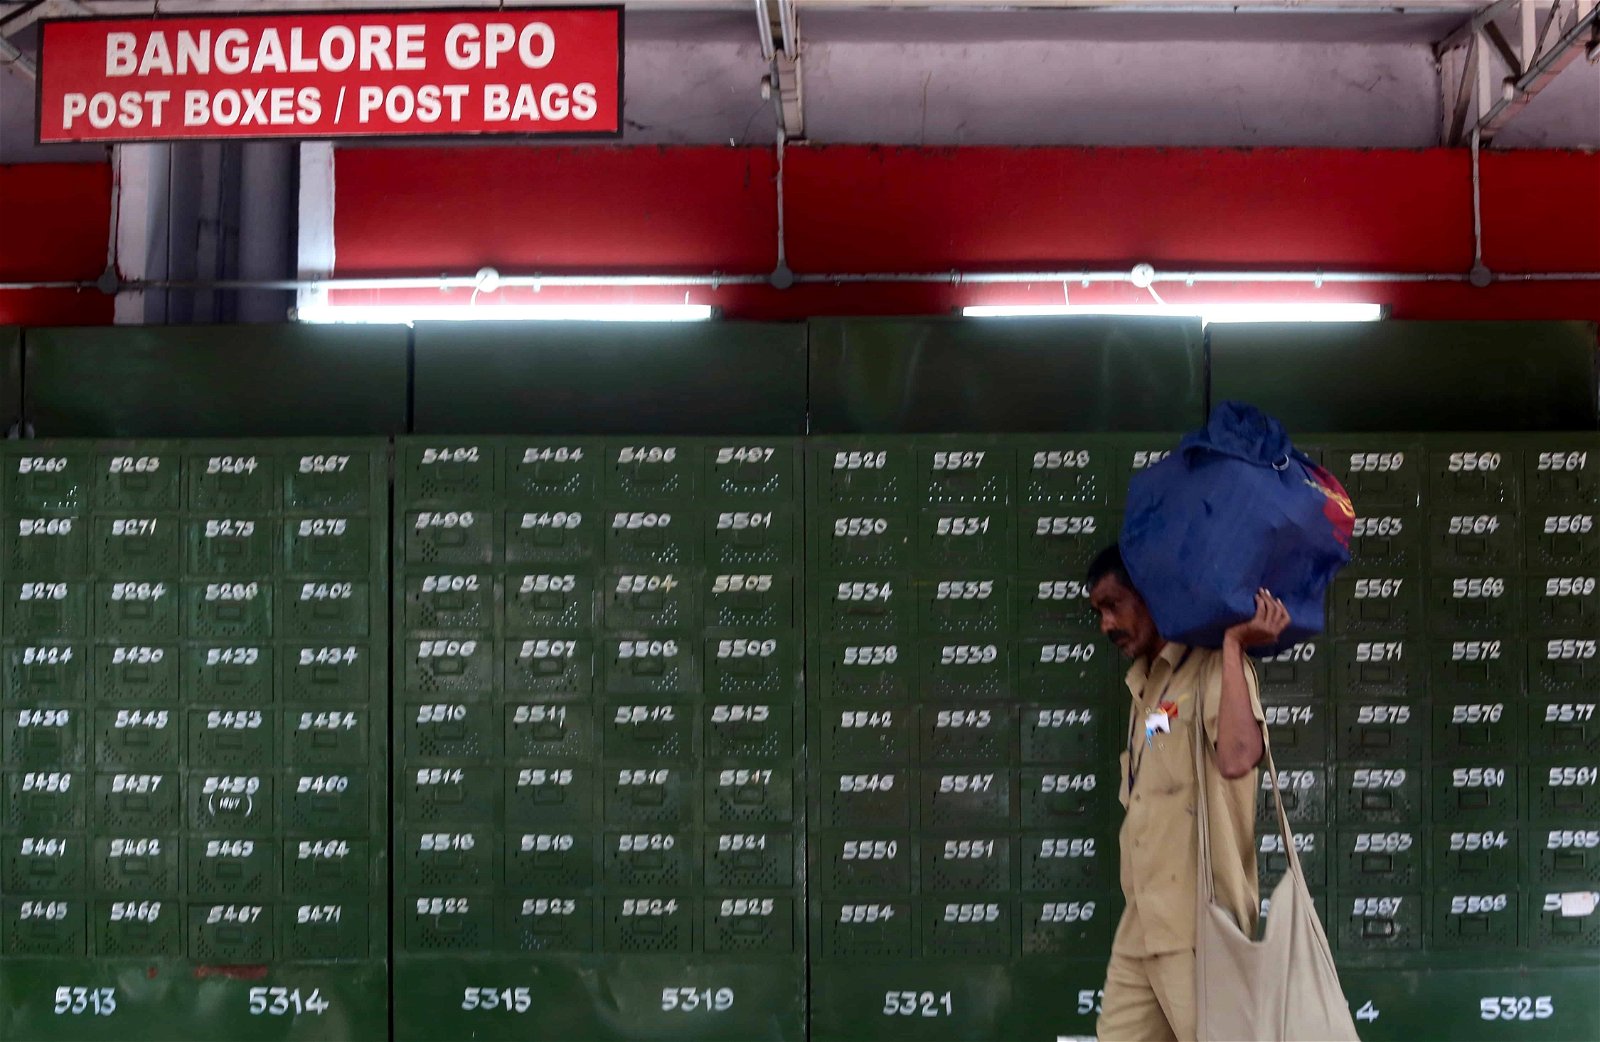 Een man loopt met een zak langs brievenbussen van een postkantoor in India.